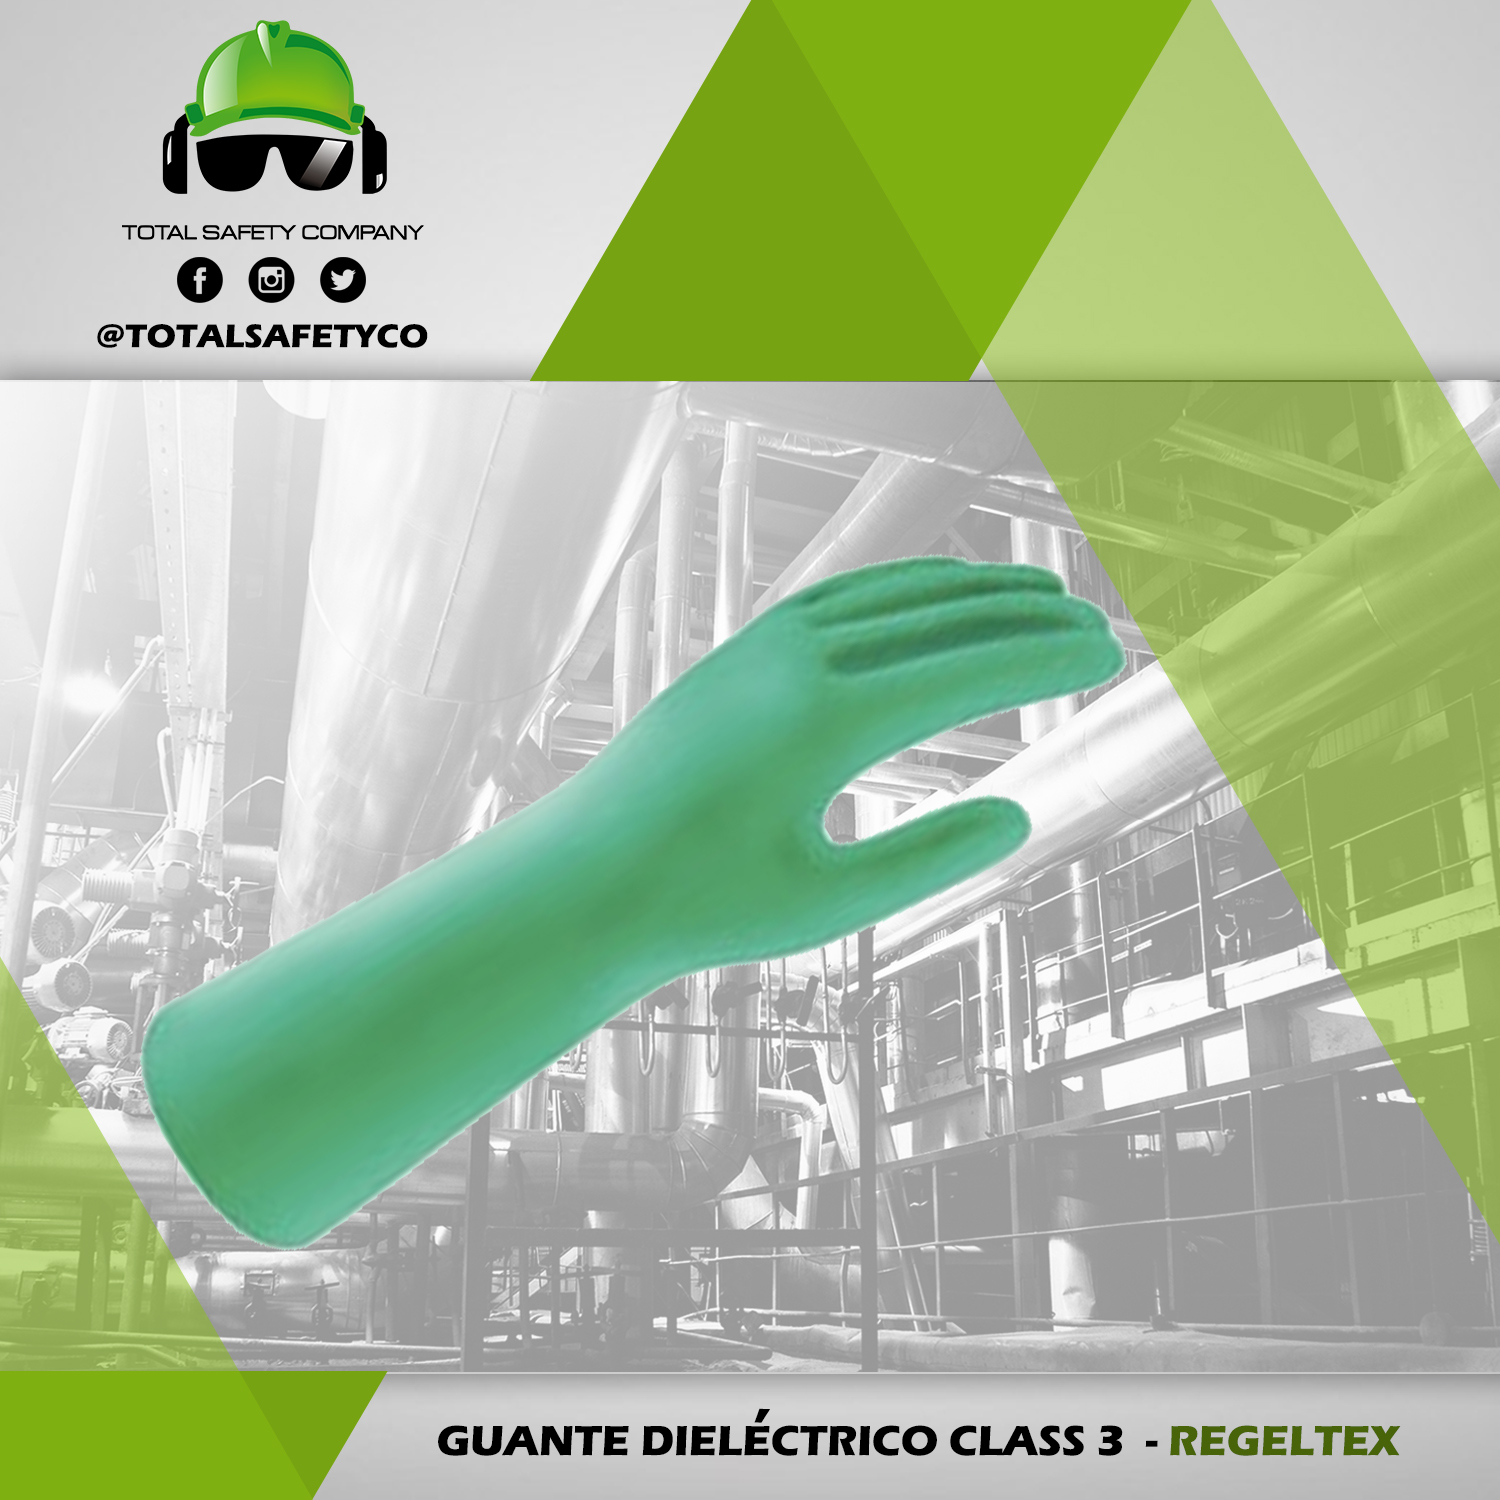 Guante dieléctrico  class 3 - REGELTEX